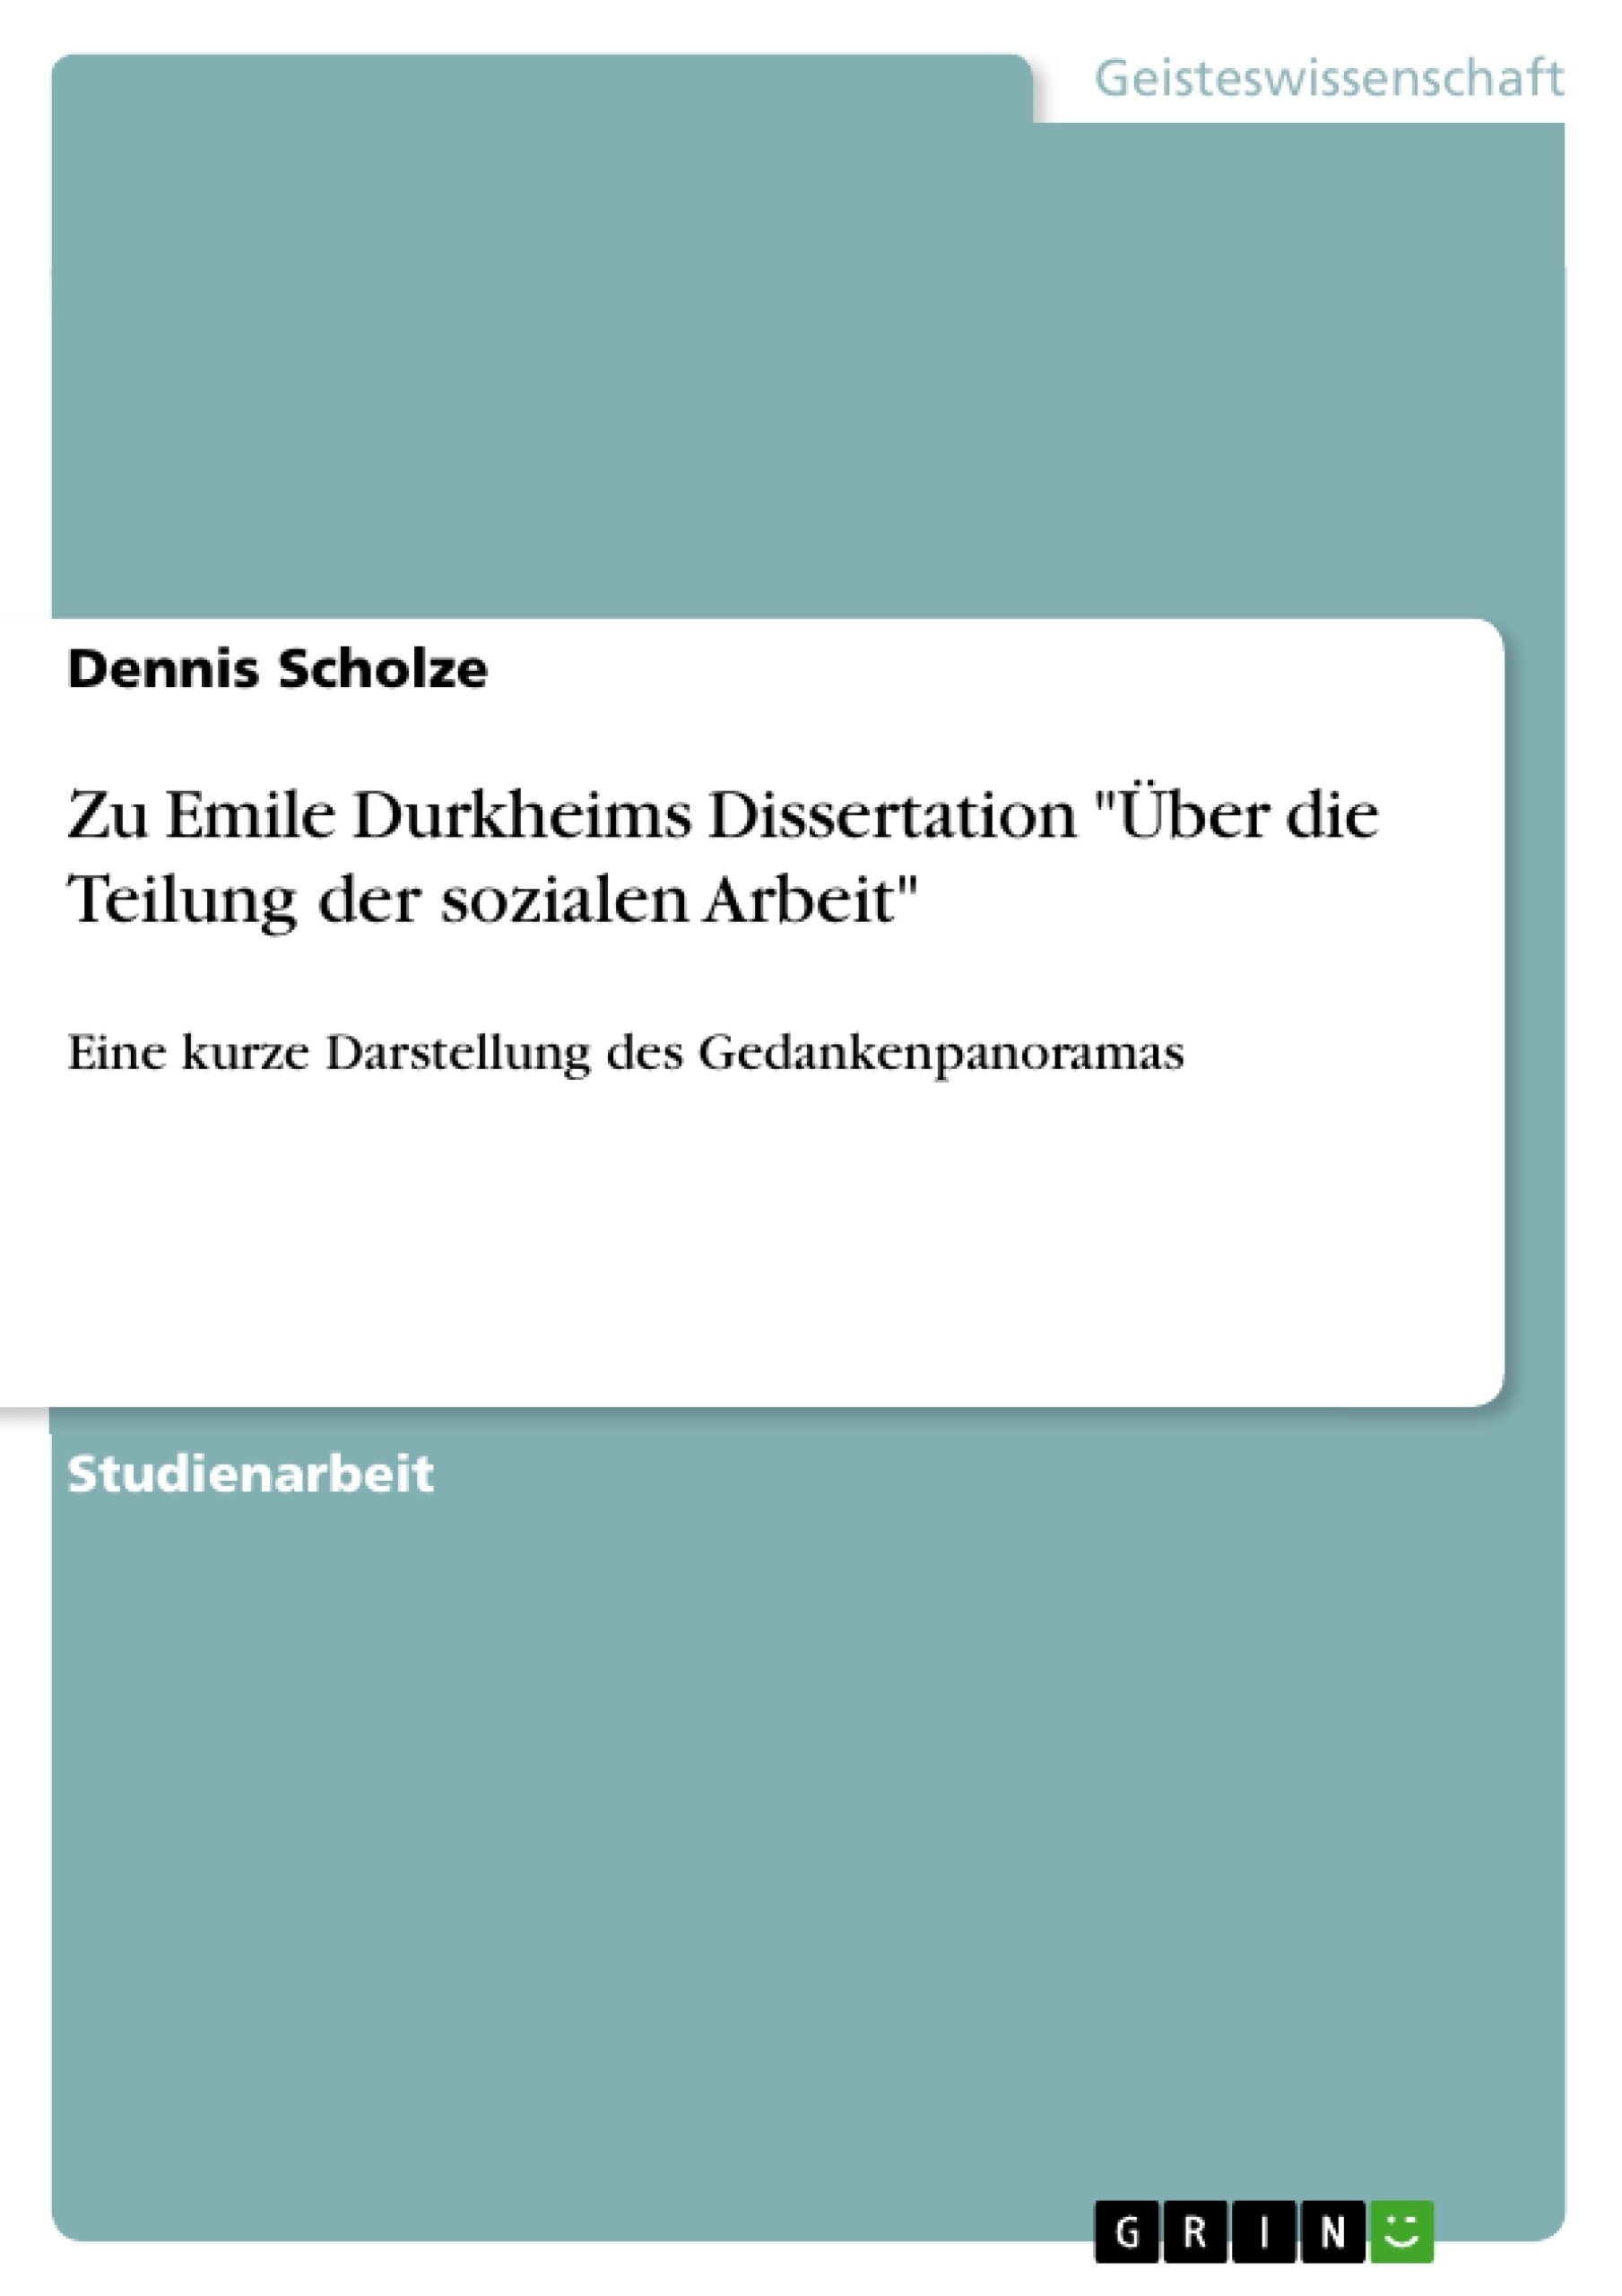 Título: Zu Emile Durkheims Dissertation "Über die Teilung der sozialen Arbeit"